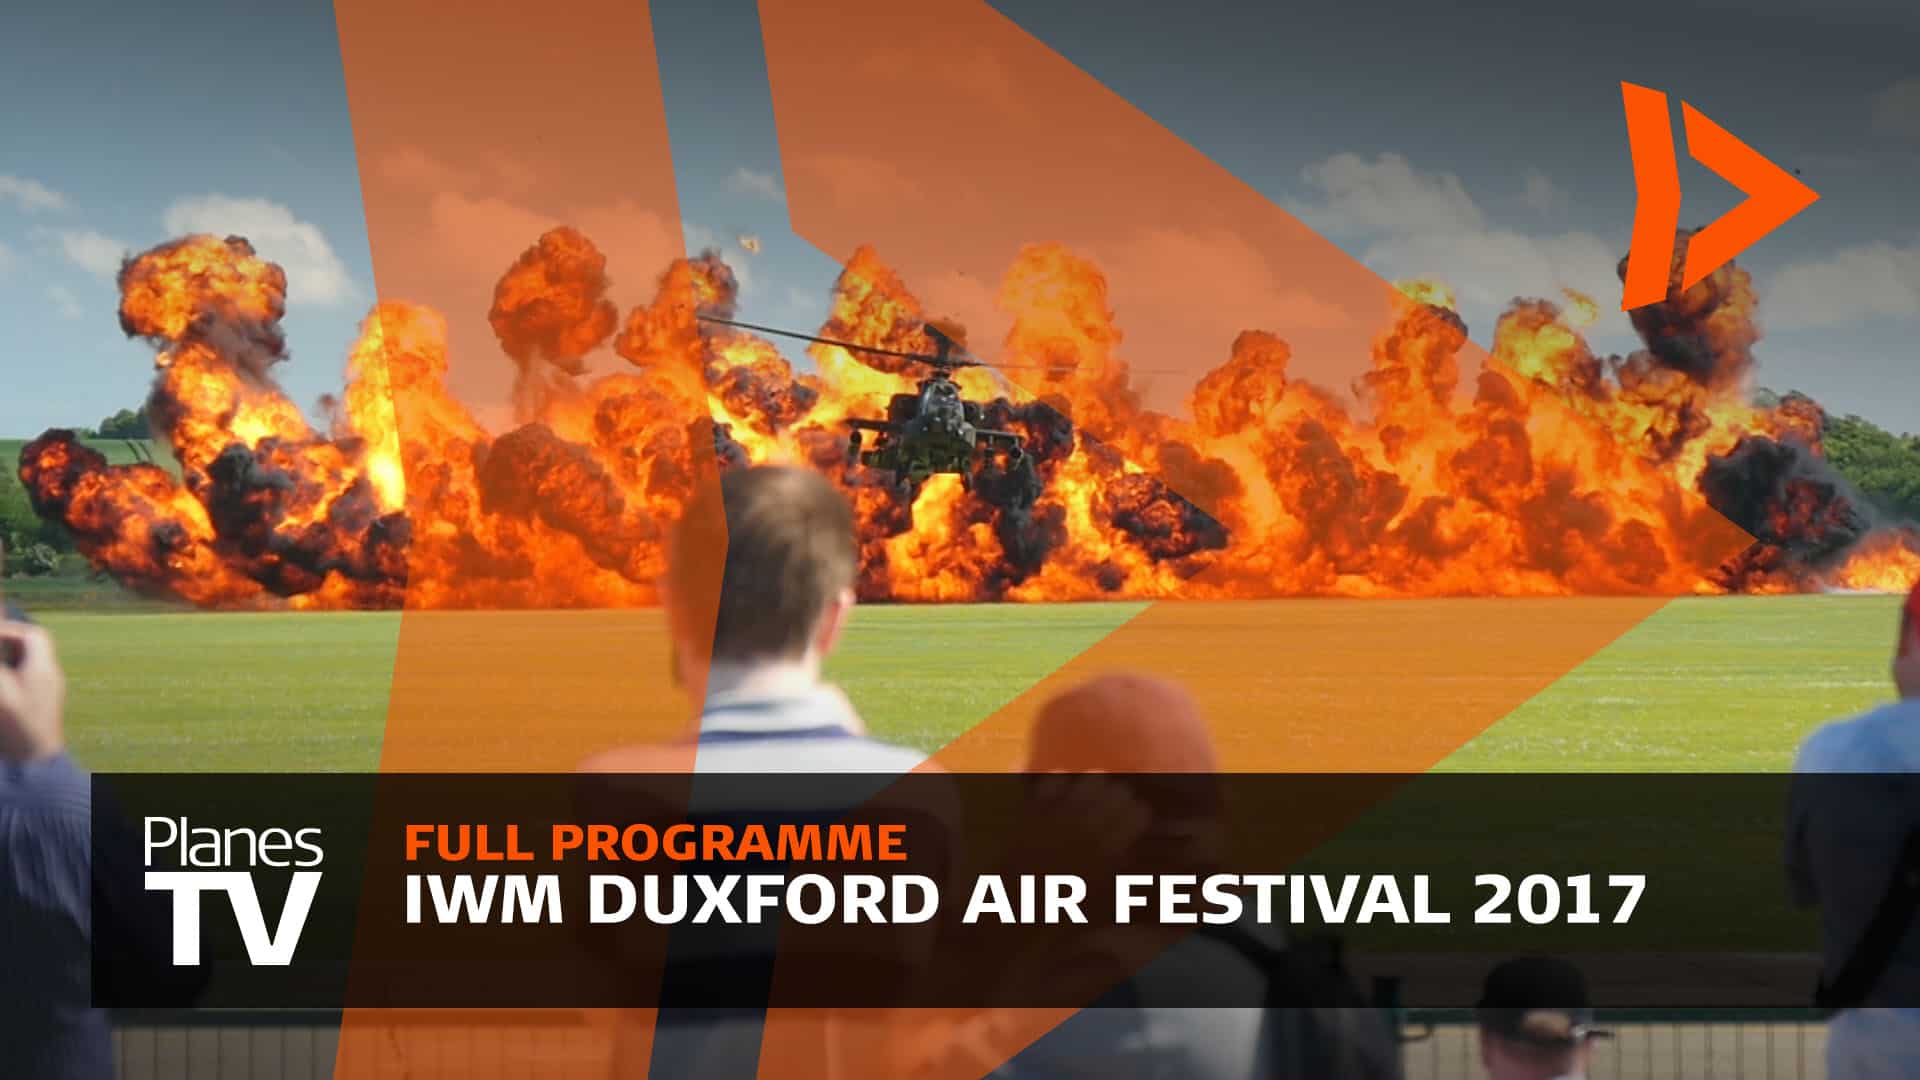 IWM Duxford Air Festival 2017